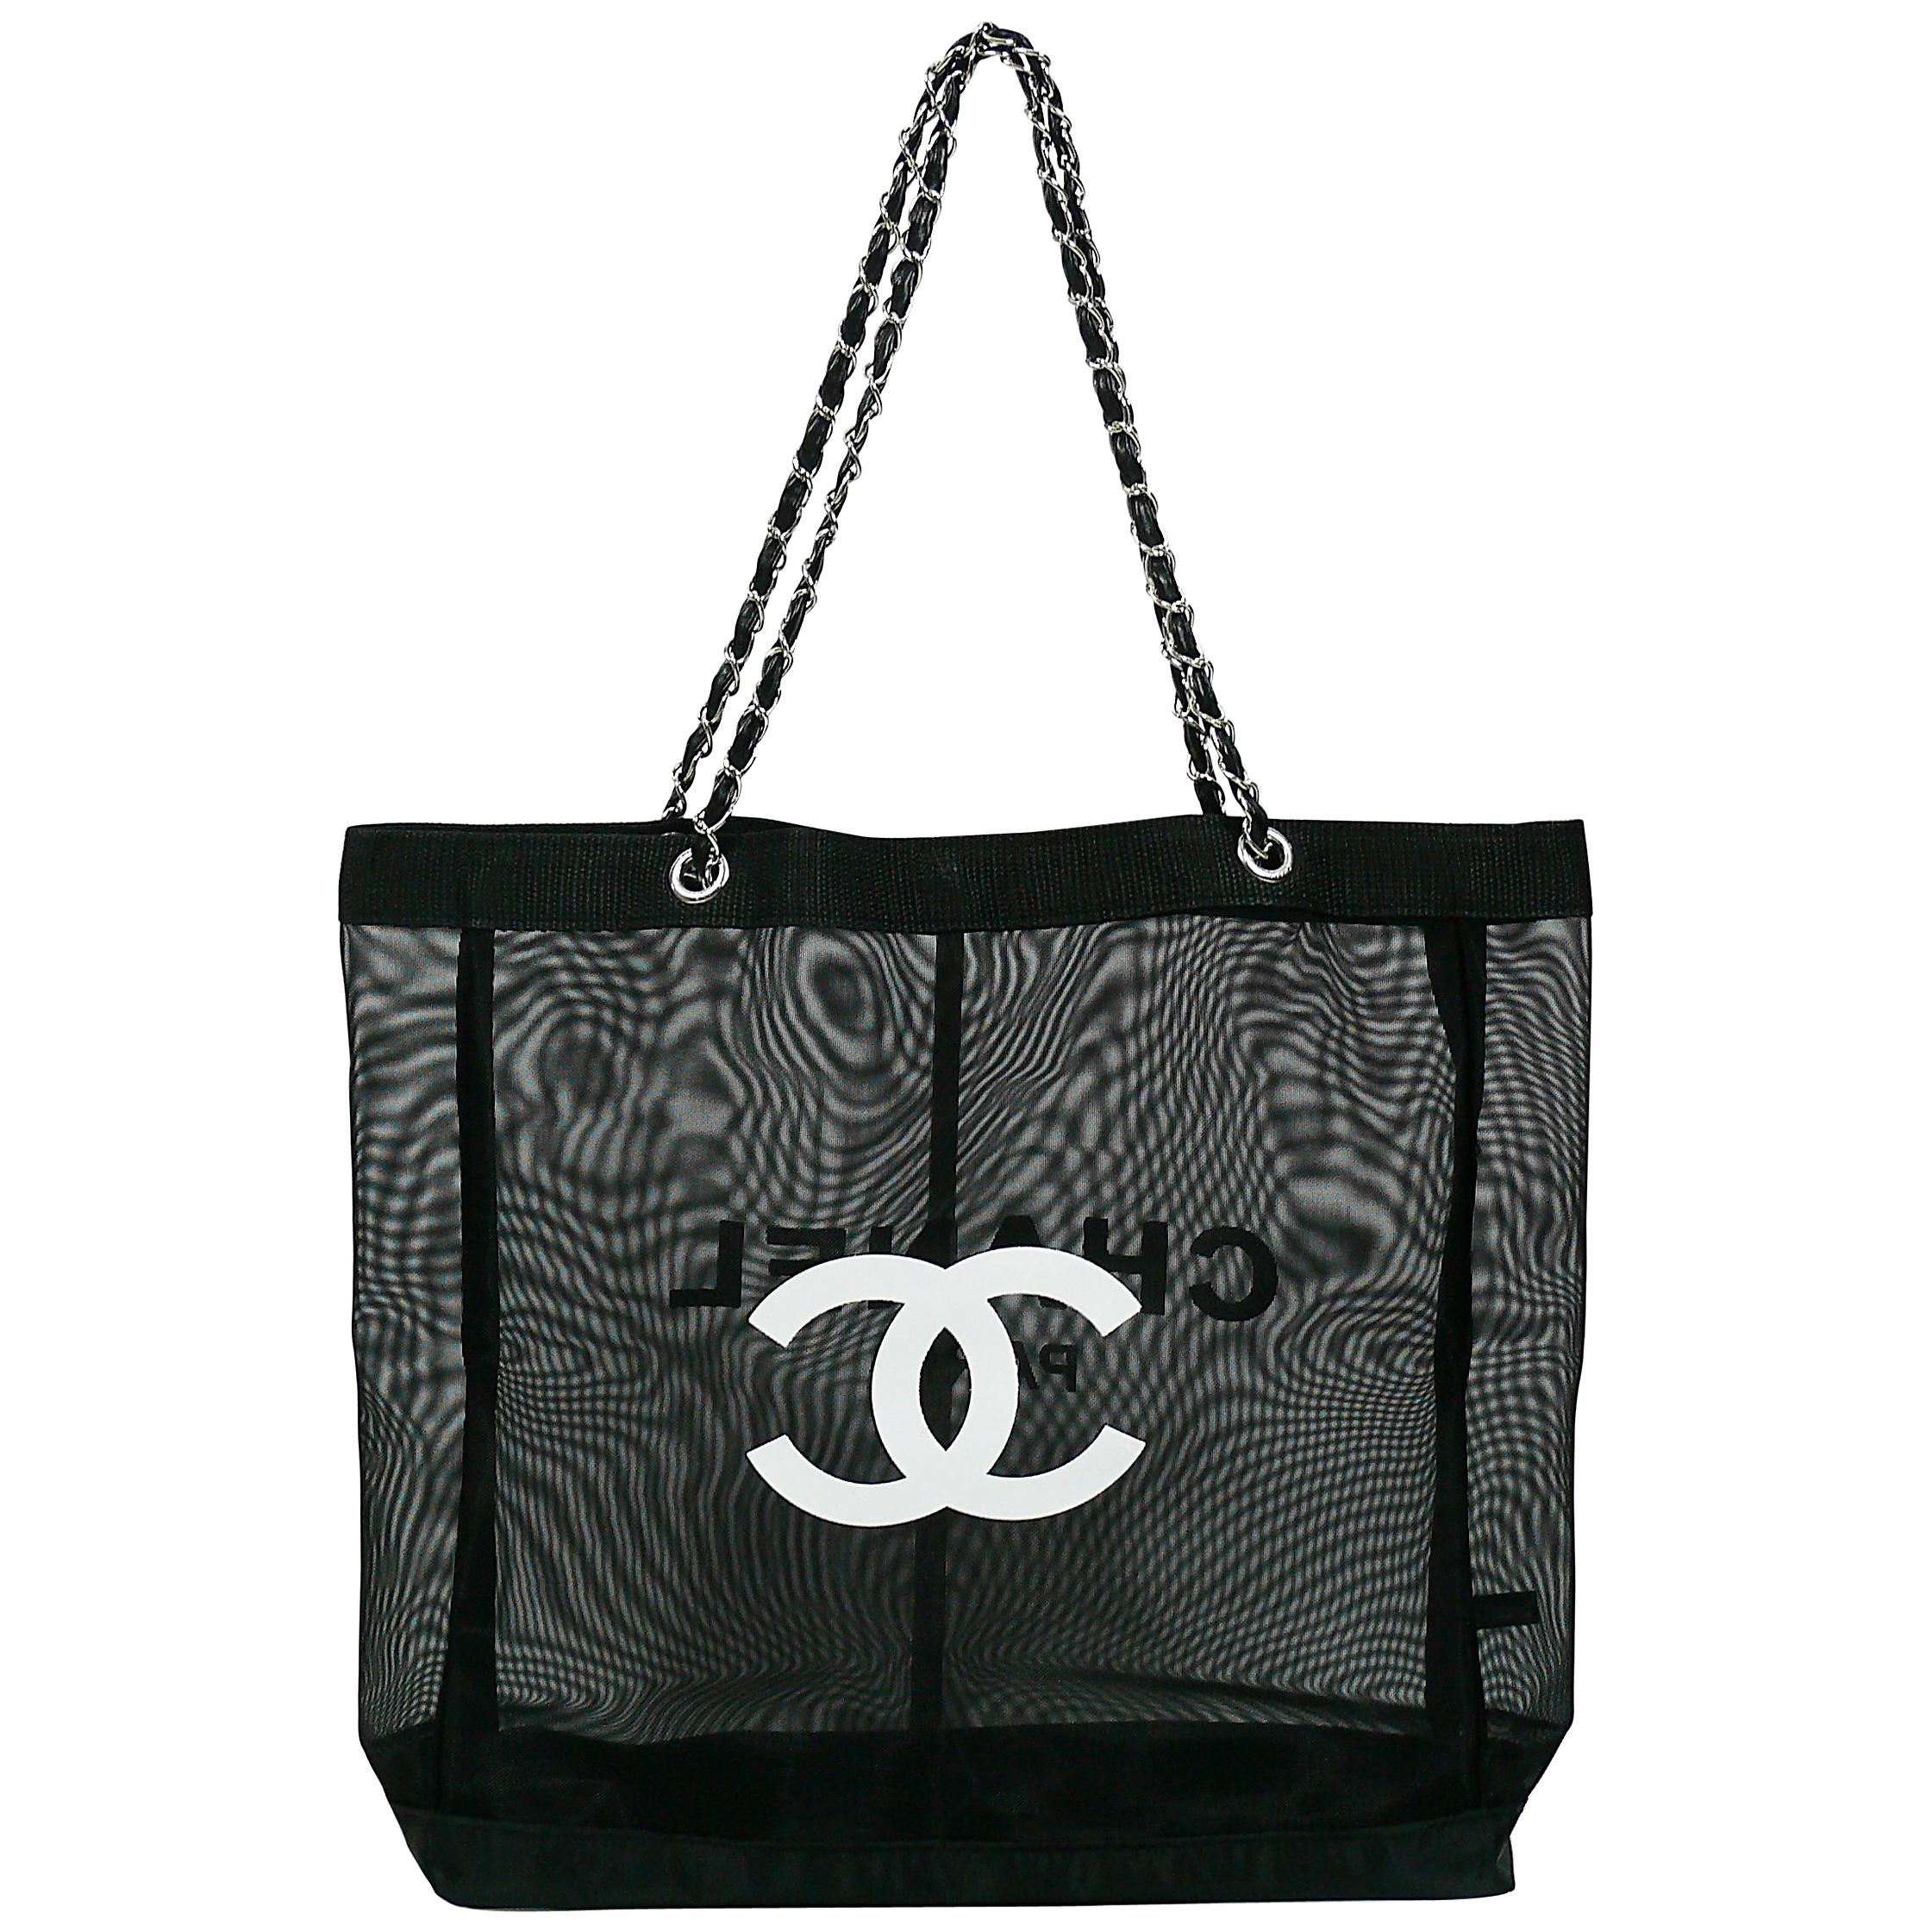 Chanel Vip Bag - 3 For Sale on 1stDibs